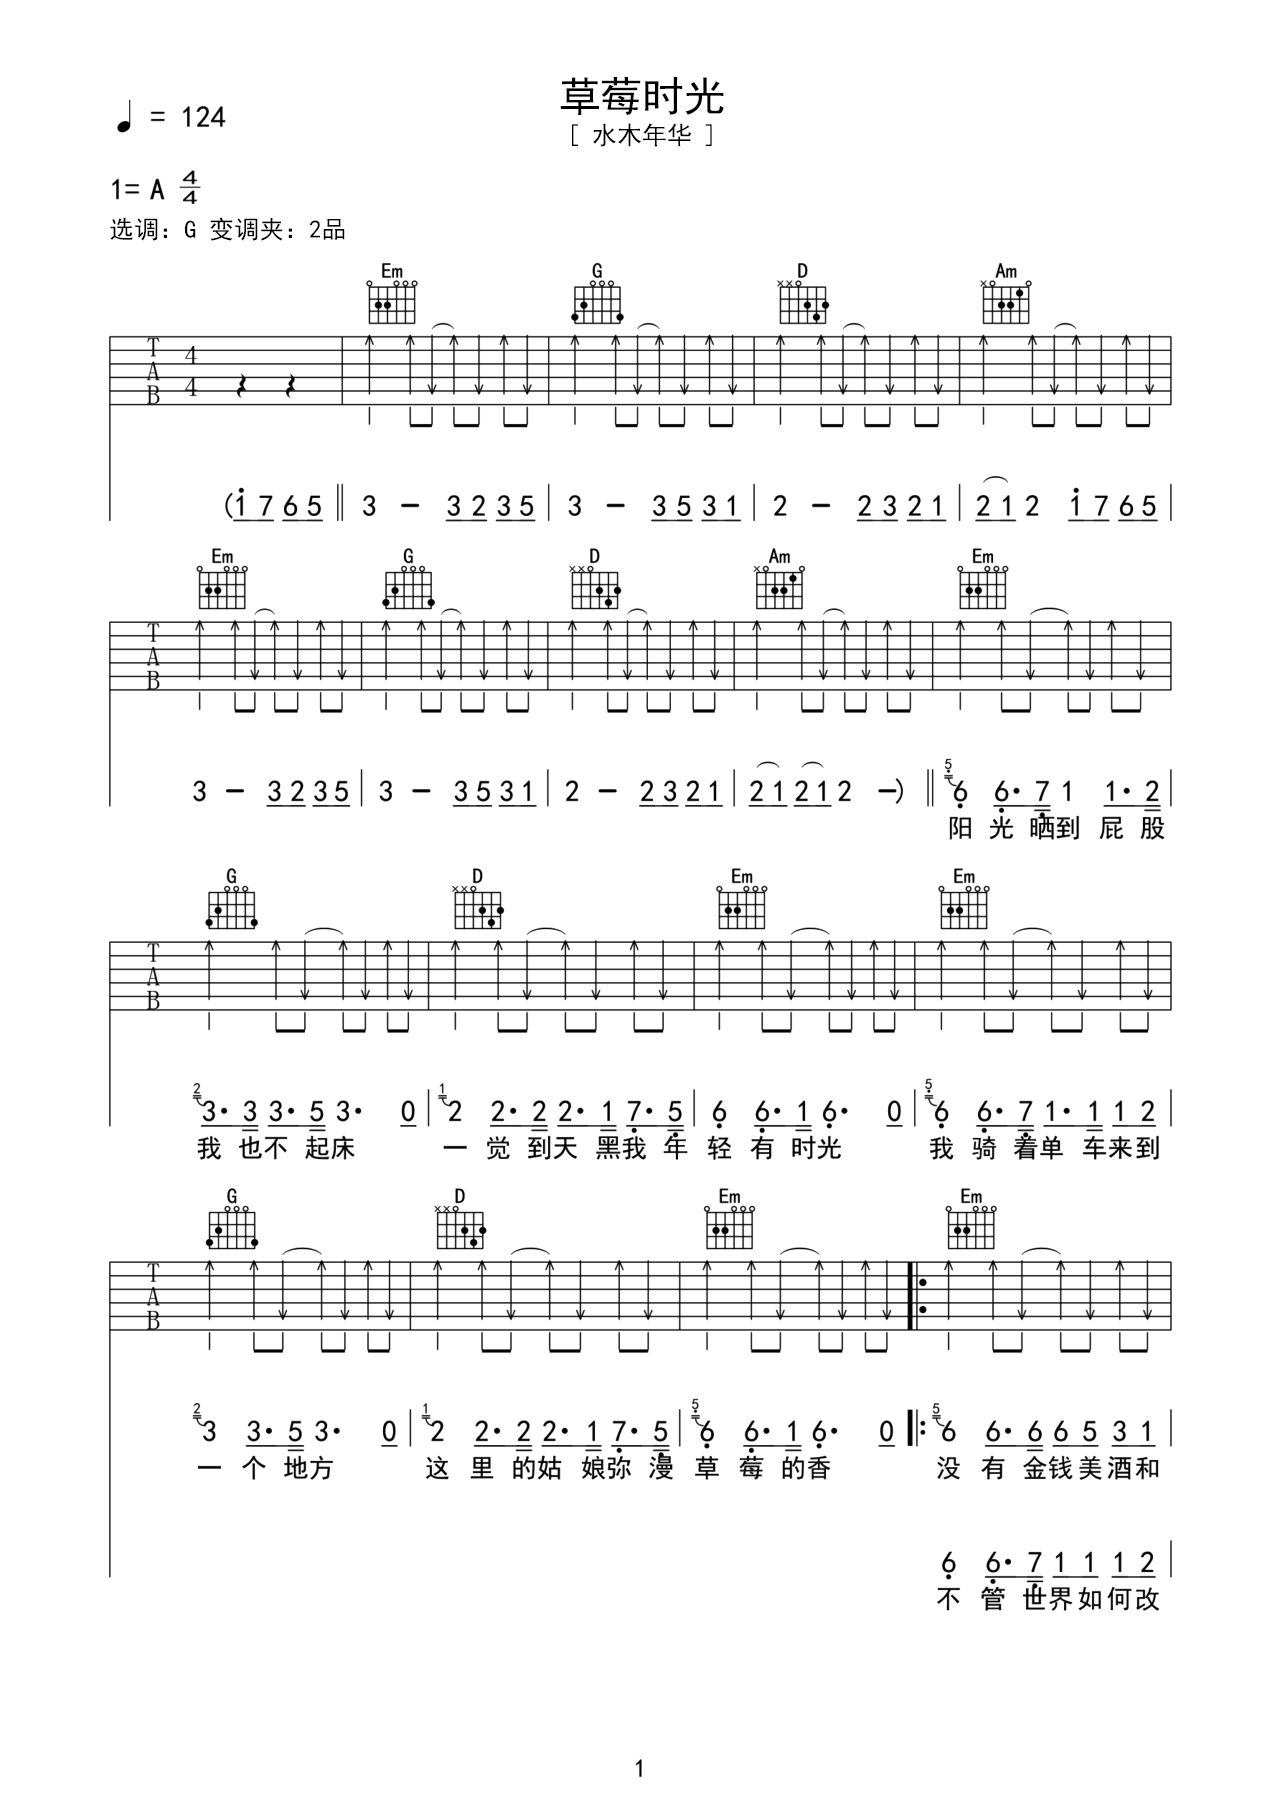 摇滚经典吉他歌曲《时光》C大调/四四拍/分解和弦+扫弦-吉他曲谱 - 乐器学习网